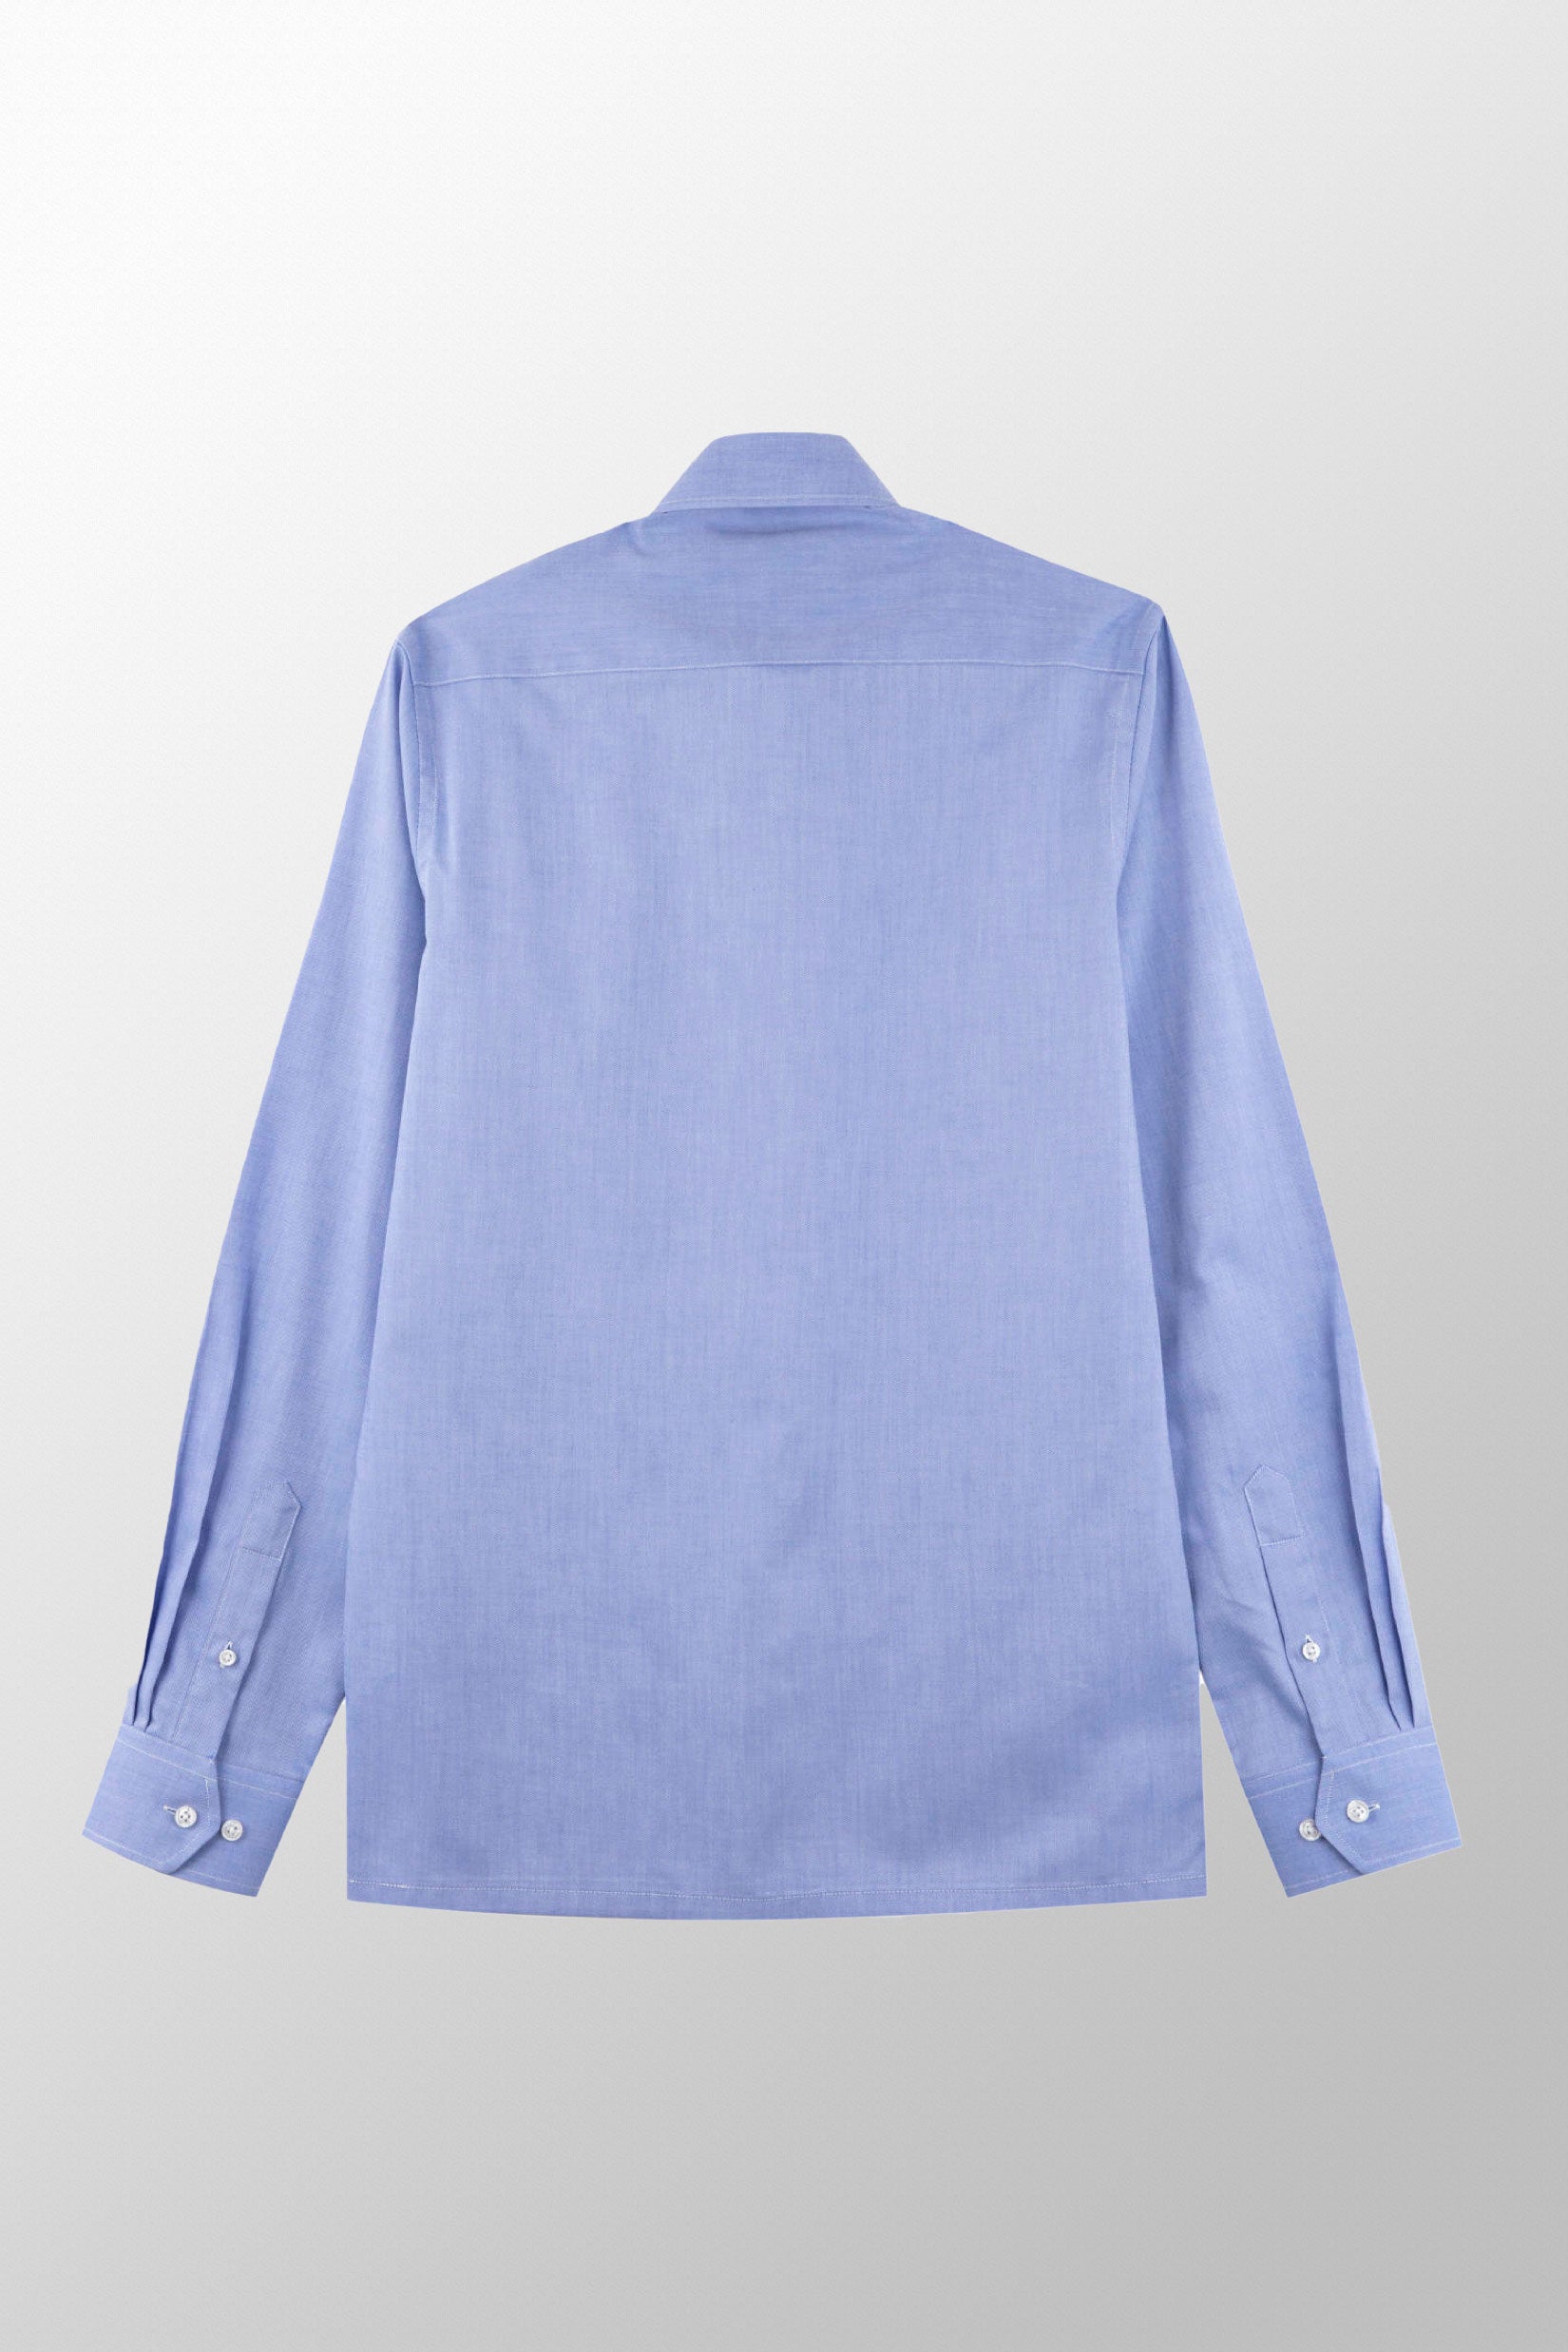 Strijkvrij Overhemd - Donkerblauw Royal Oxford - Overhemd - Vercate - Vercate - Overhemden - Strijkvrije overhemden - Heren - herenkleding